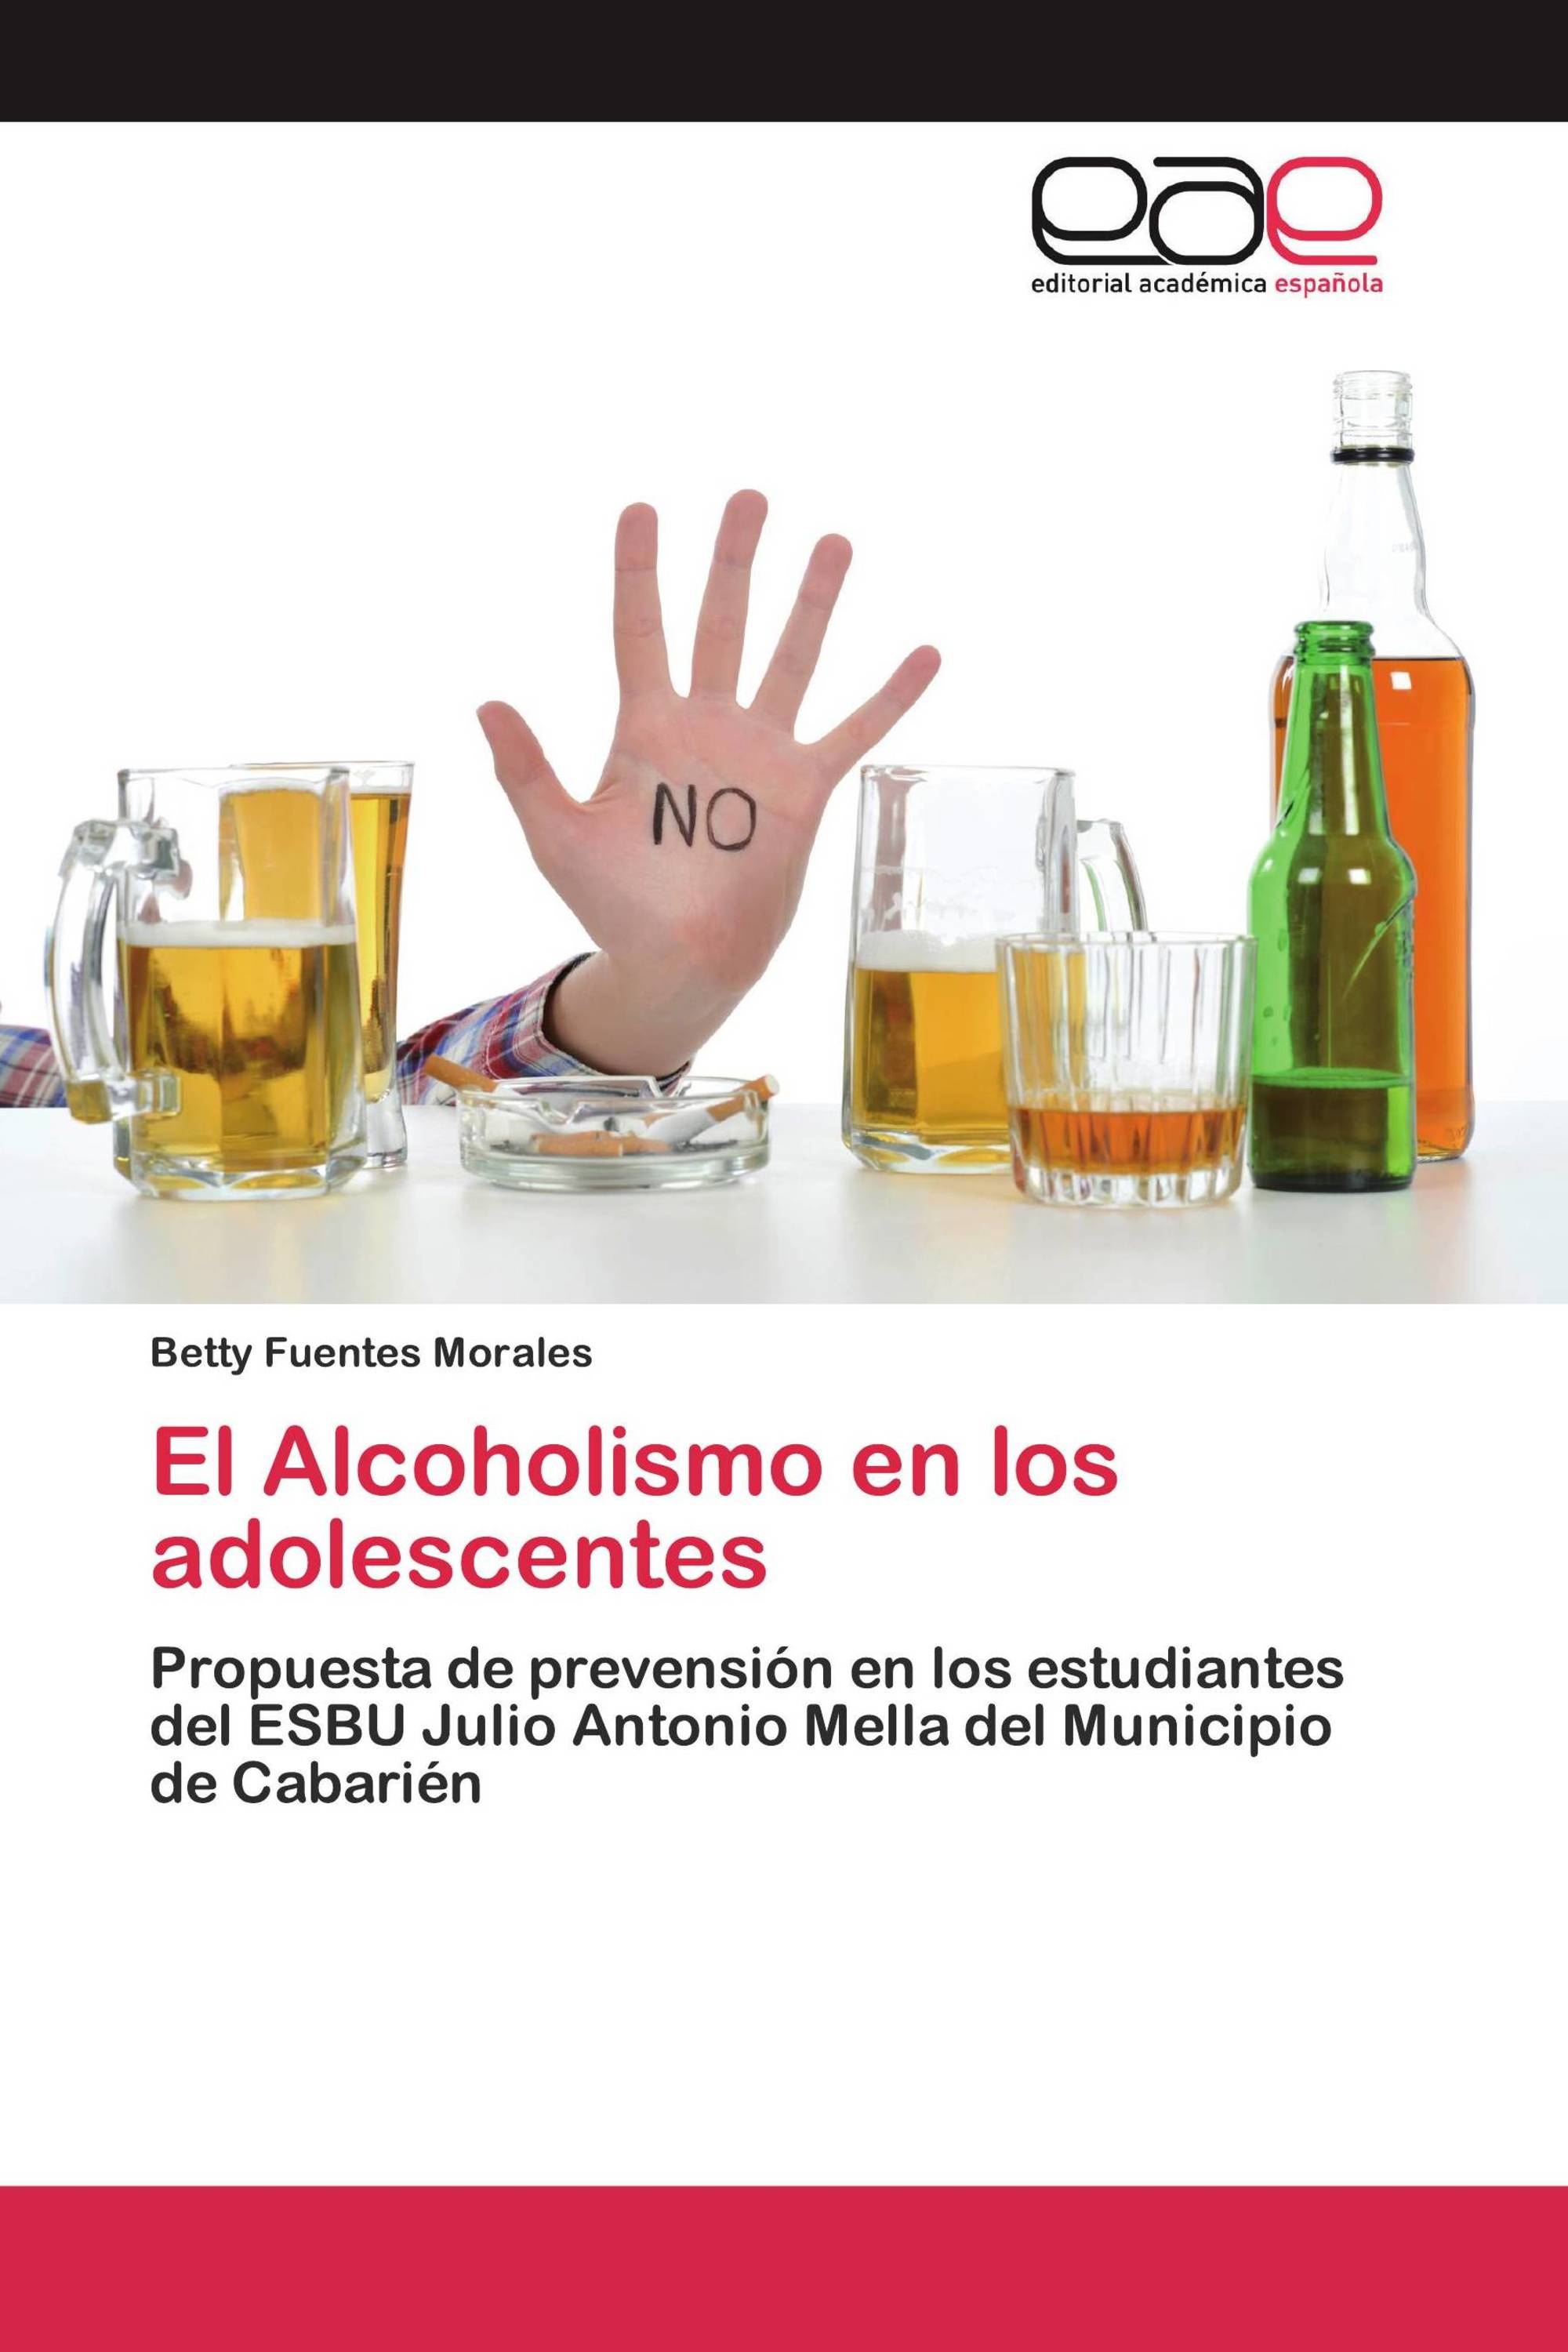 El Alcoholismo En Los Adolescentes 978 3 330 09772 8 9783330097728 3330097728 1102